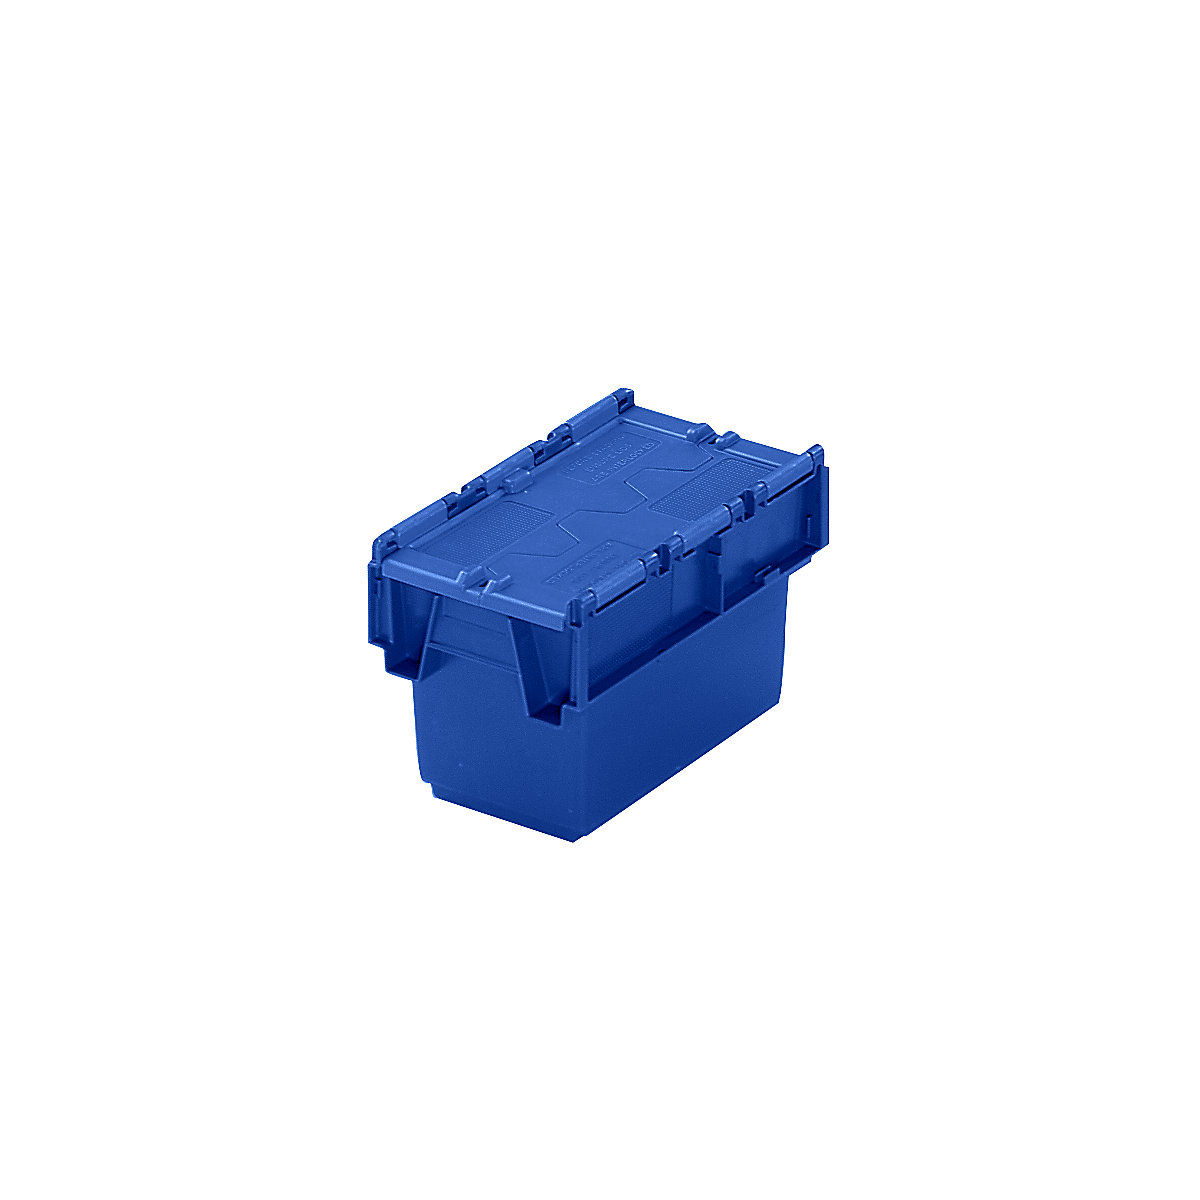 Pojemnik wielokrotnego użytku do ustawiania w stos ze składaną pokrywą, poj. 6 l, dł. x szer. x wys. 300 x 200 x 200 mm, niebieski, od 10 szt.